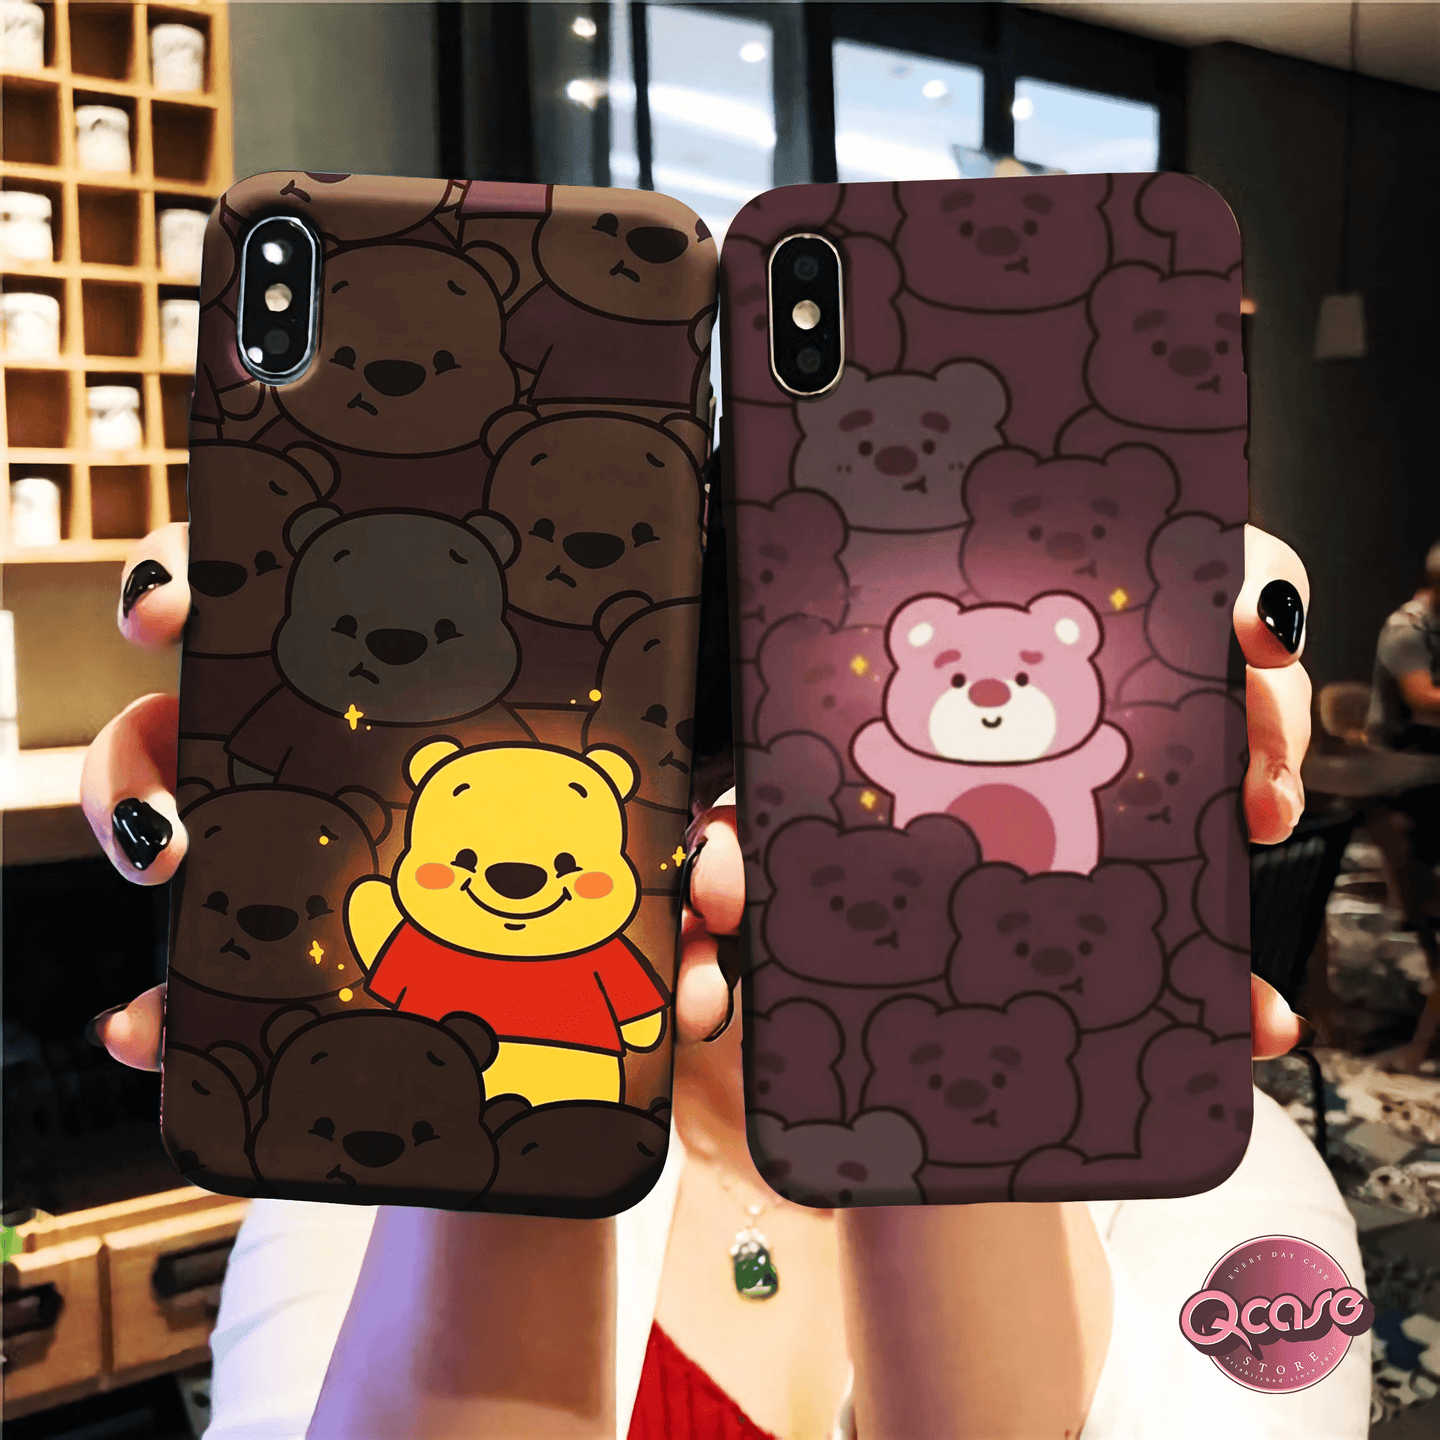 Light Bear between Dark Bears Phone Covers